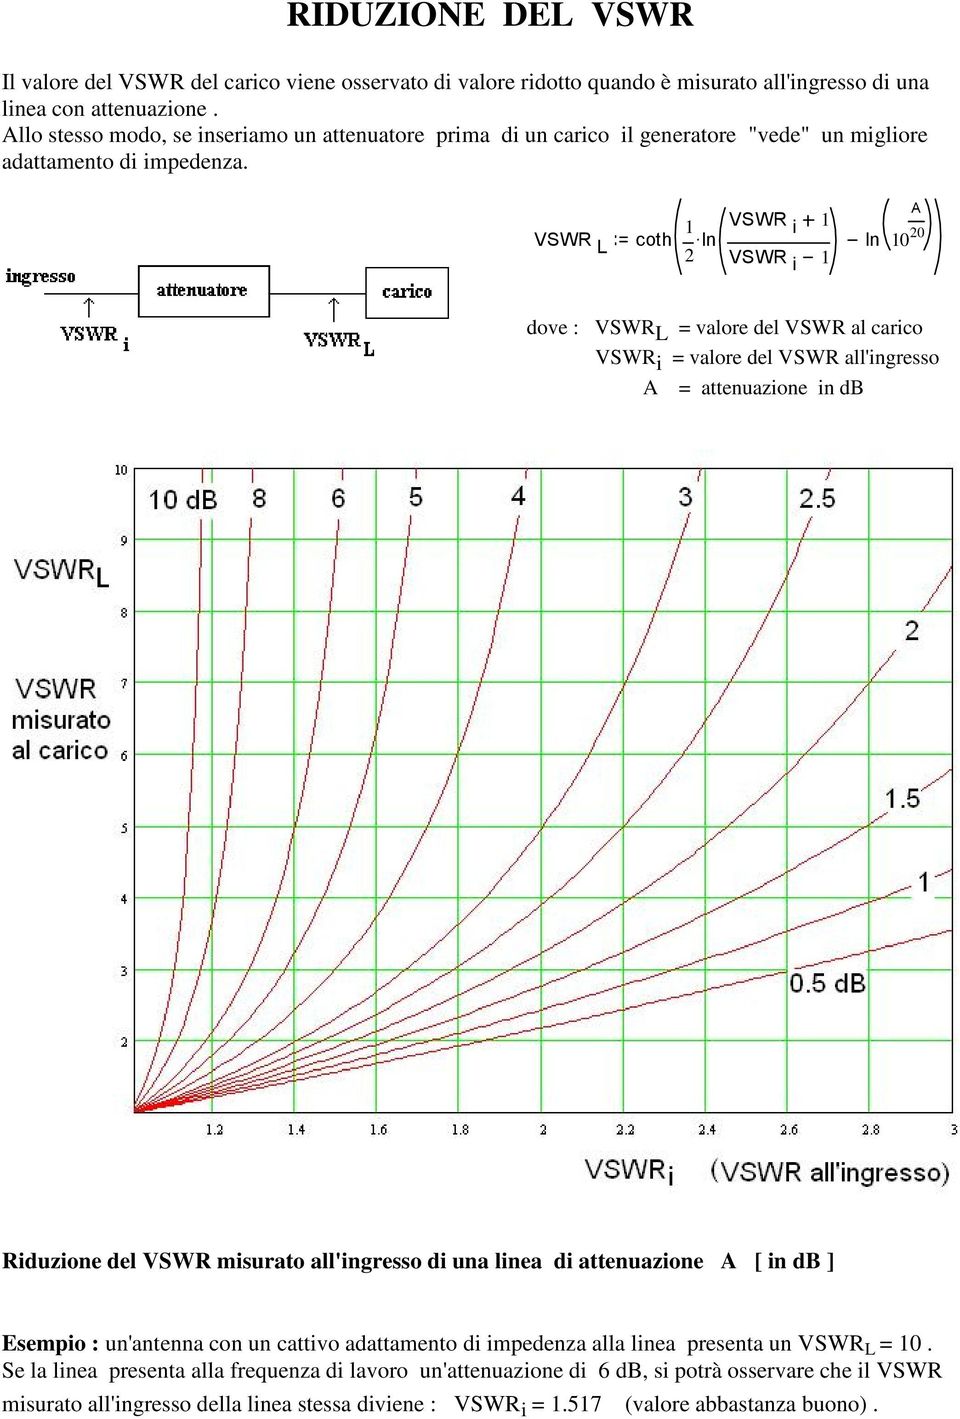 A = attenuazione in db Riduzione del VSWR misurato all'ingresso di una linea di attenuazione A [ in db ] Esempio : un'antenna con un cattivo adattamento di impedenza alla linea presenta un